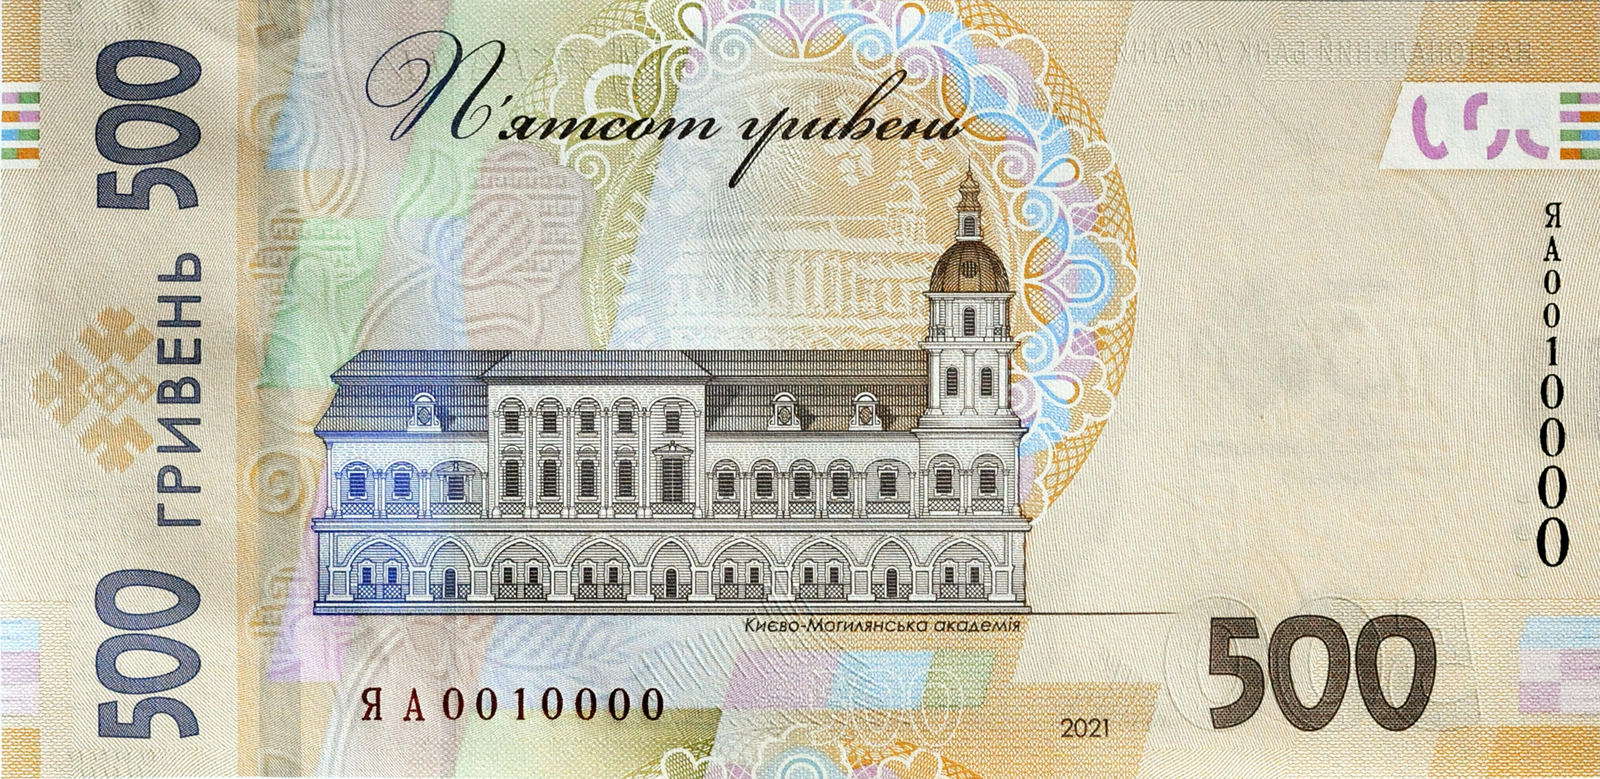 Сторона банкноты с Киево-Могилянкой